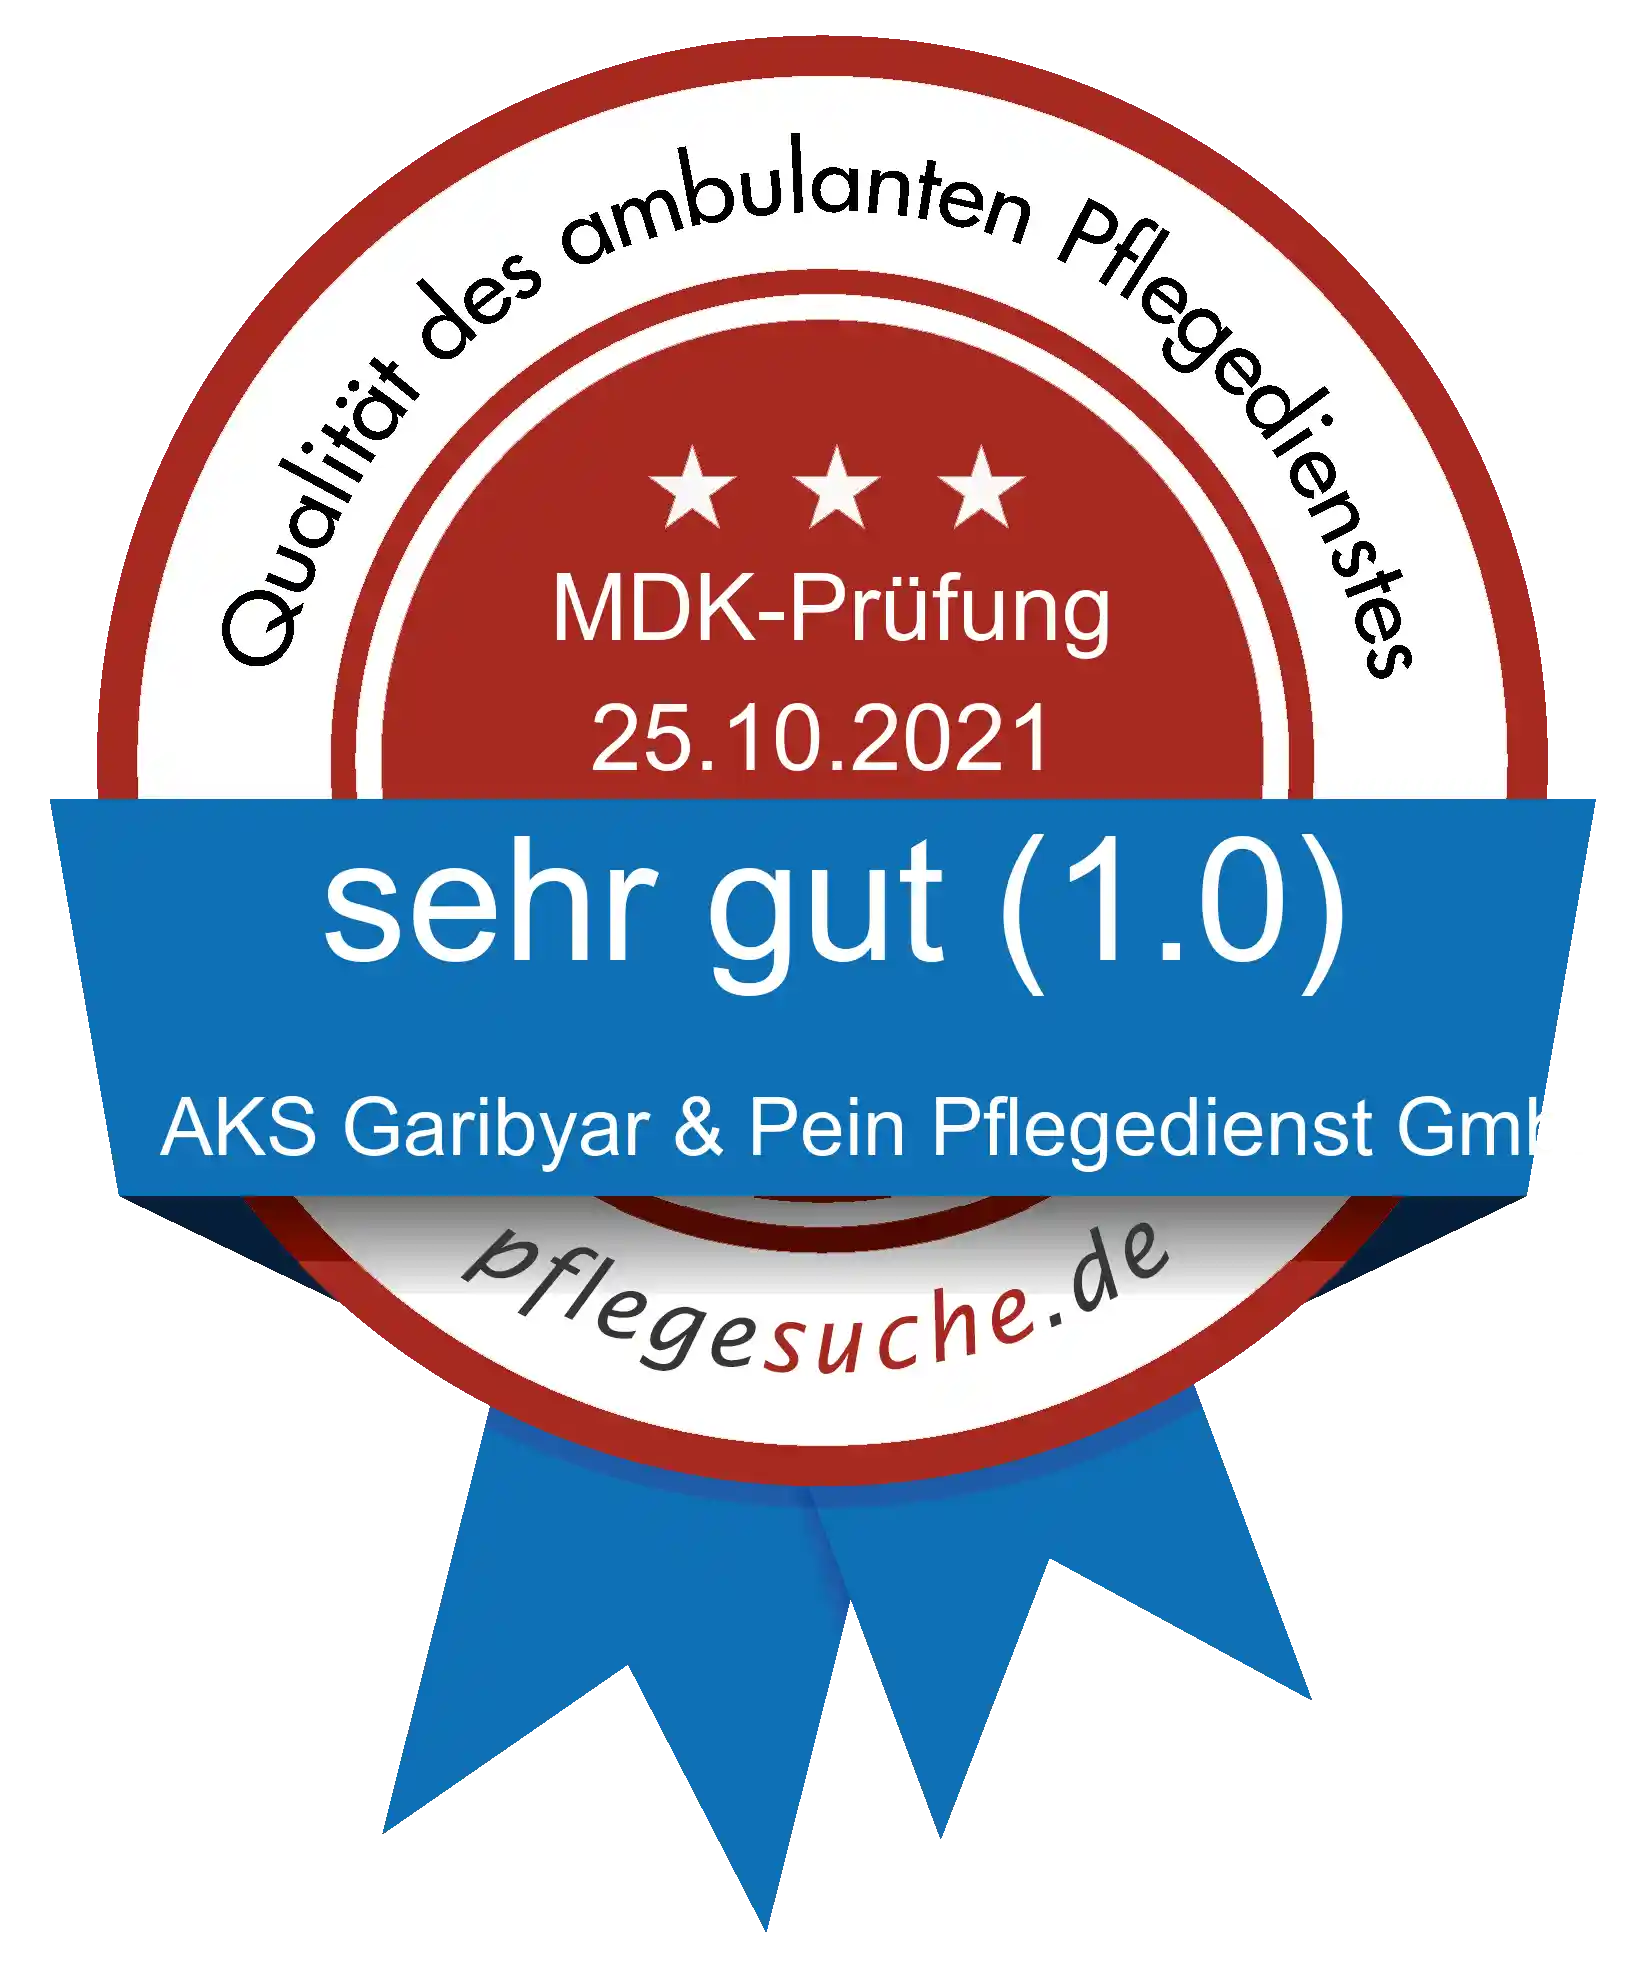 Siegel Benotung: AKS Garibyar & Pein Pflegedienst GmbH